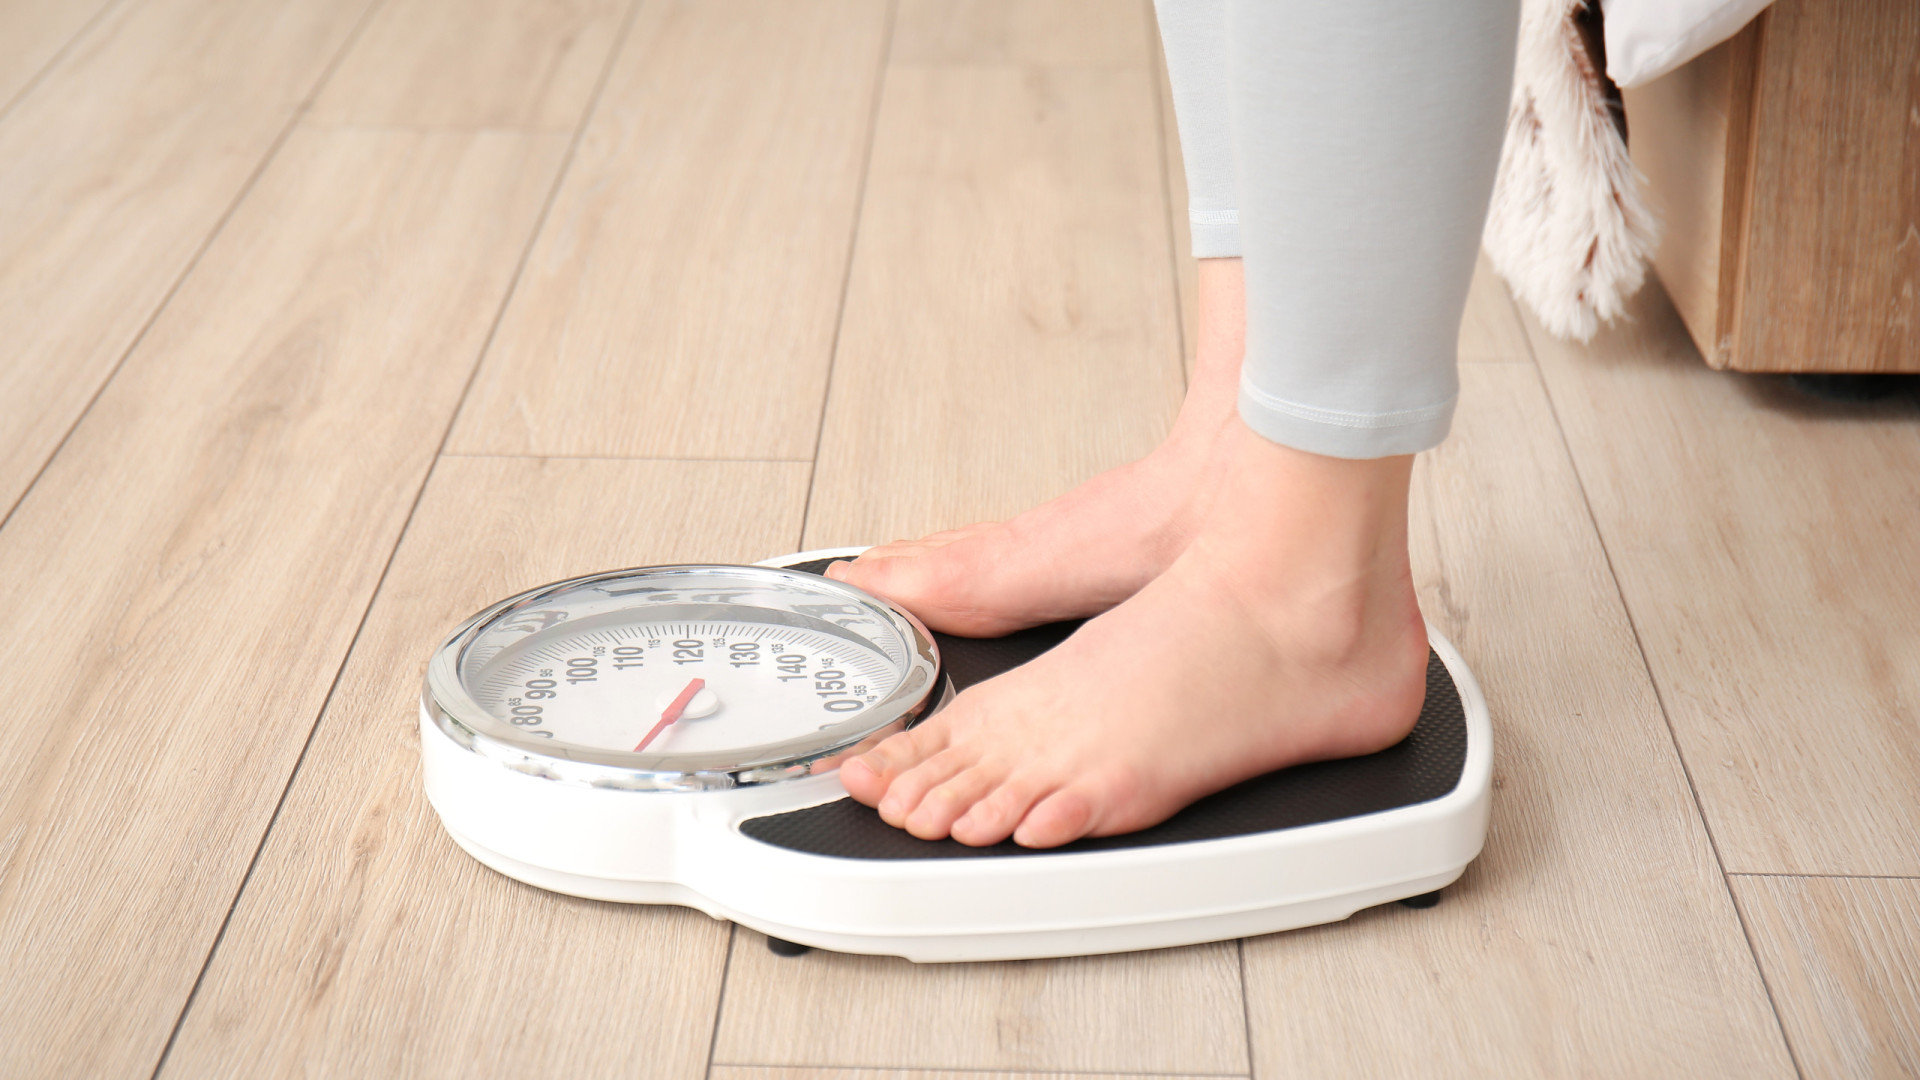 endocrinologista desmitifica a relação entre inverno e aumento de peso